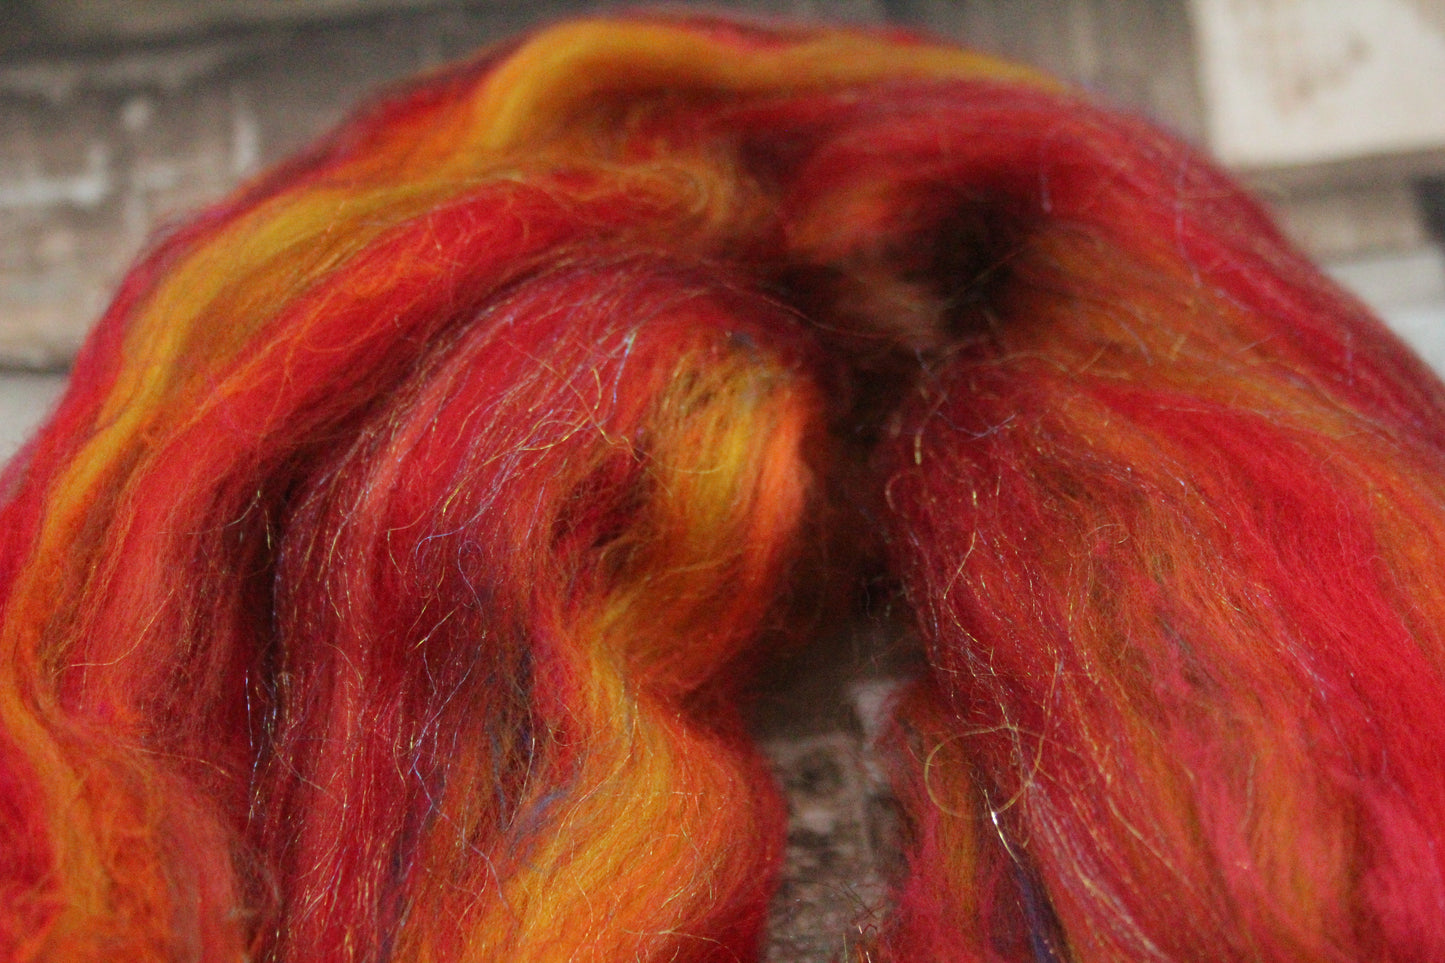 Merino Wool Blend - Red Brown Orange - 44 grams / 1.5 oz  - Fibre for felting, weaving or spinning